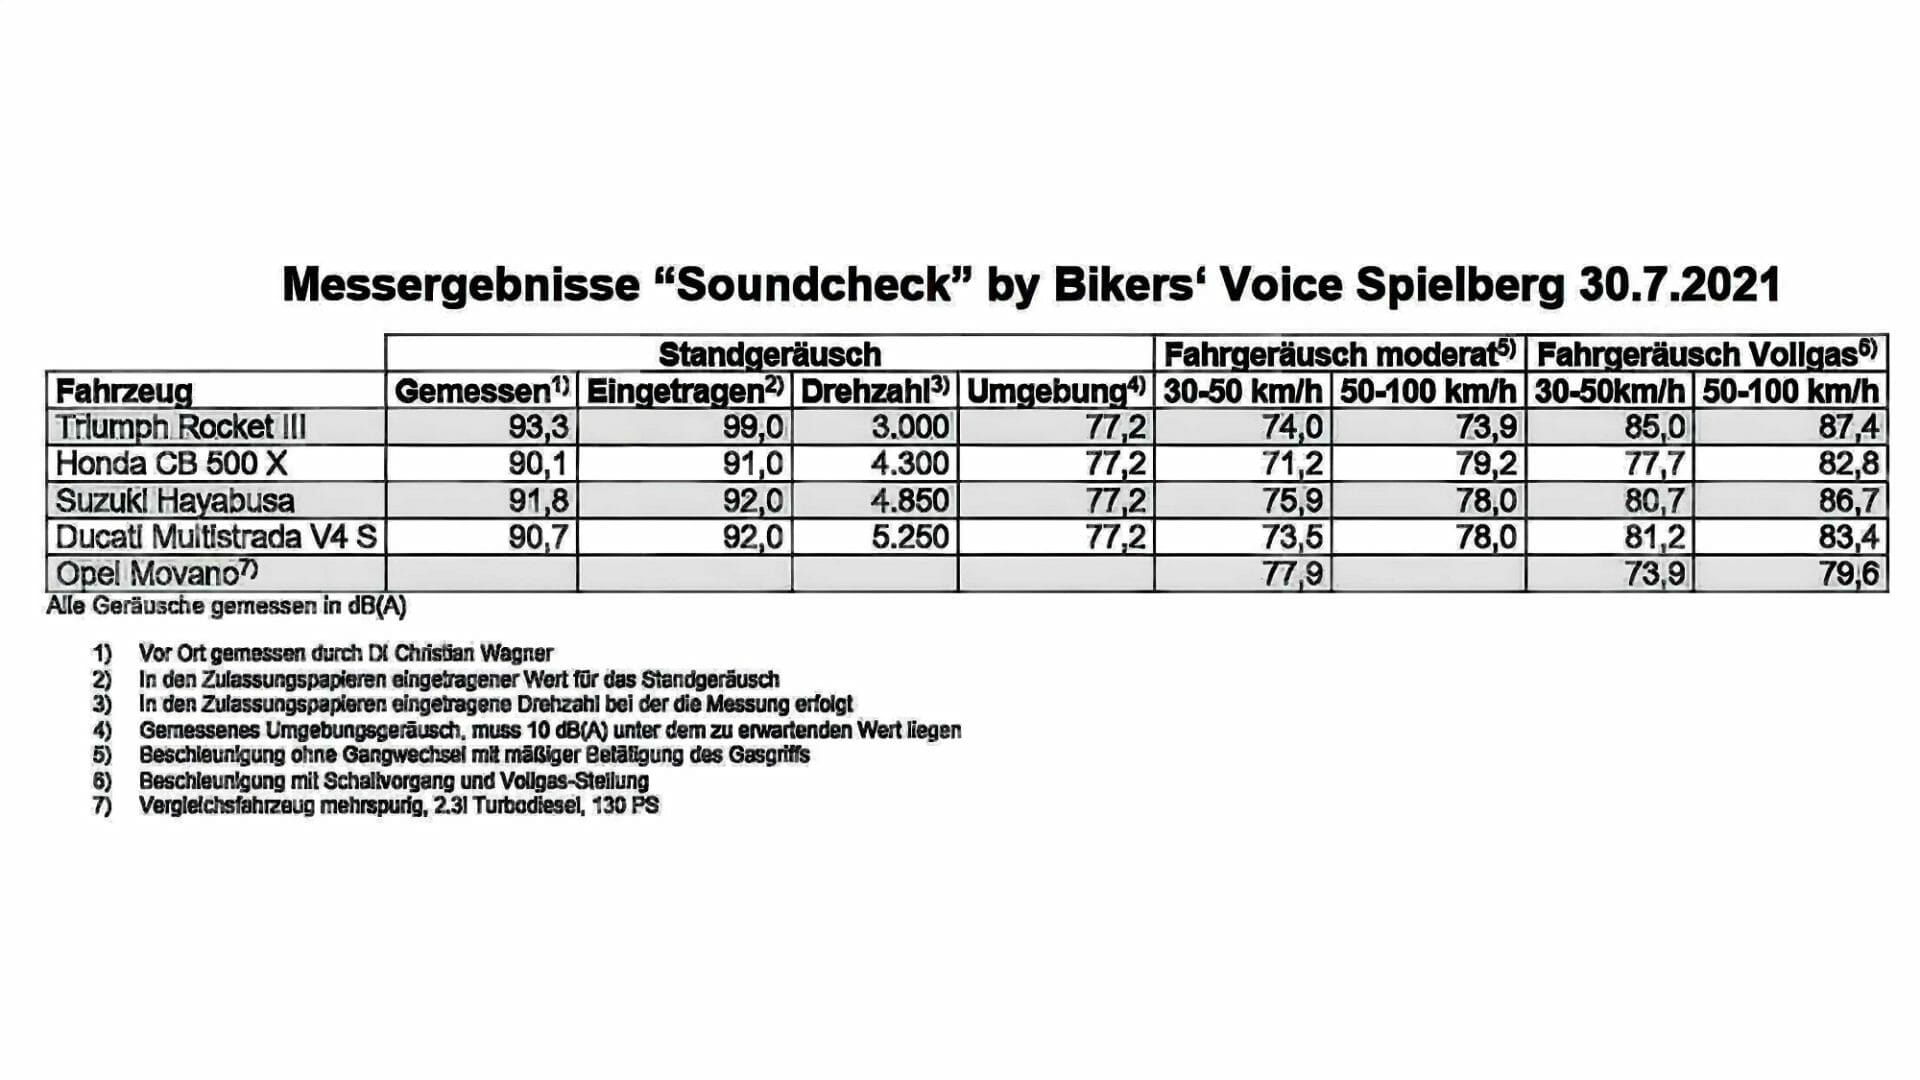 Lautstärkenmessung zeigt Sinnlosigkeit der Tiroler 95 dB Regelung
- auch in der MOTORRAD NACHRICHTEN APP